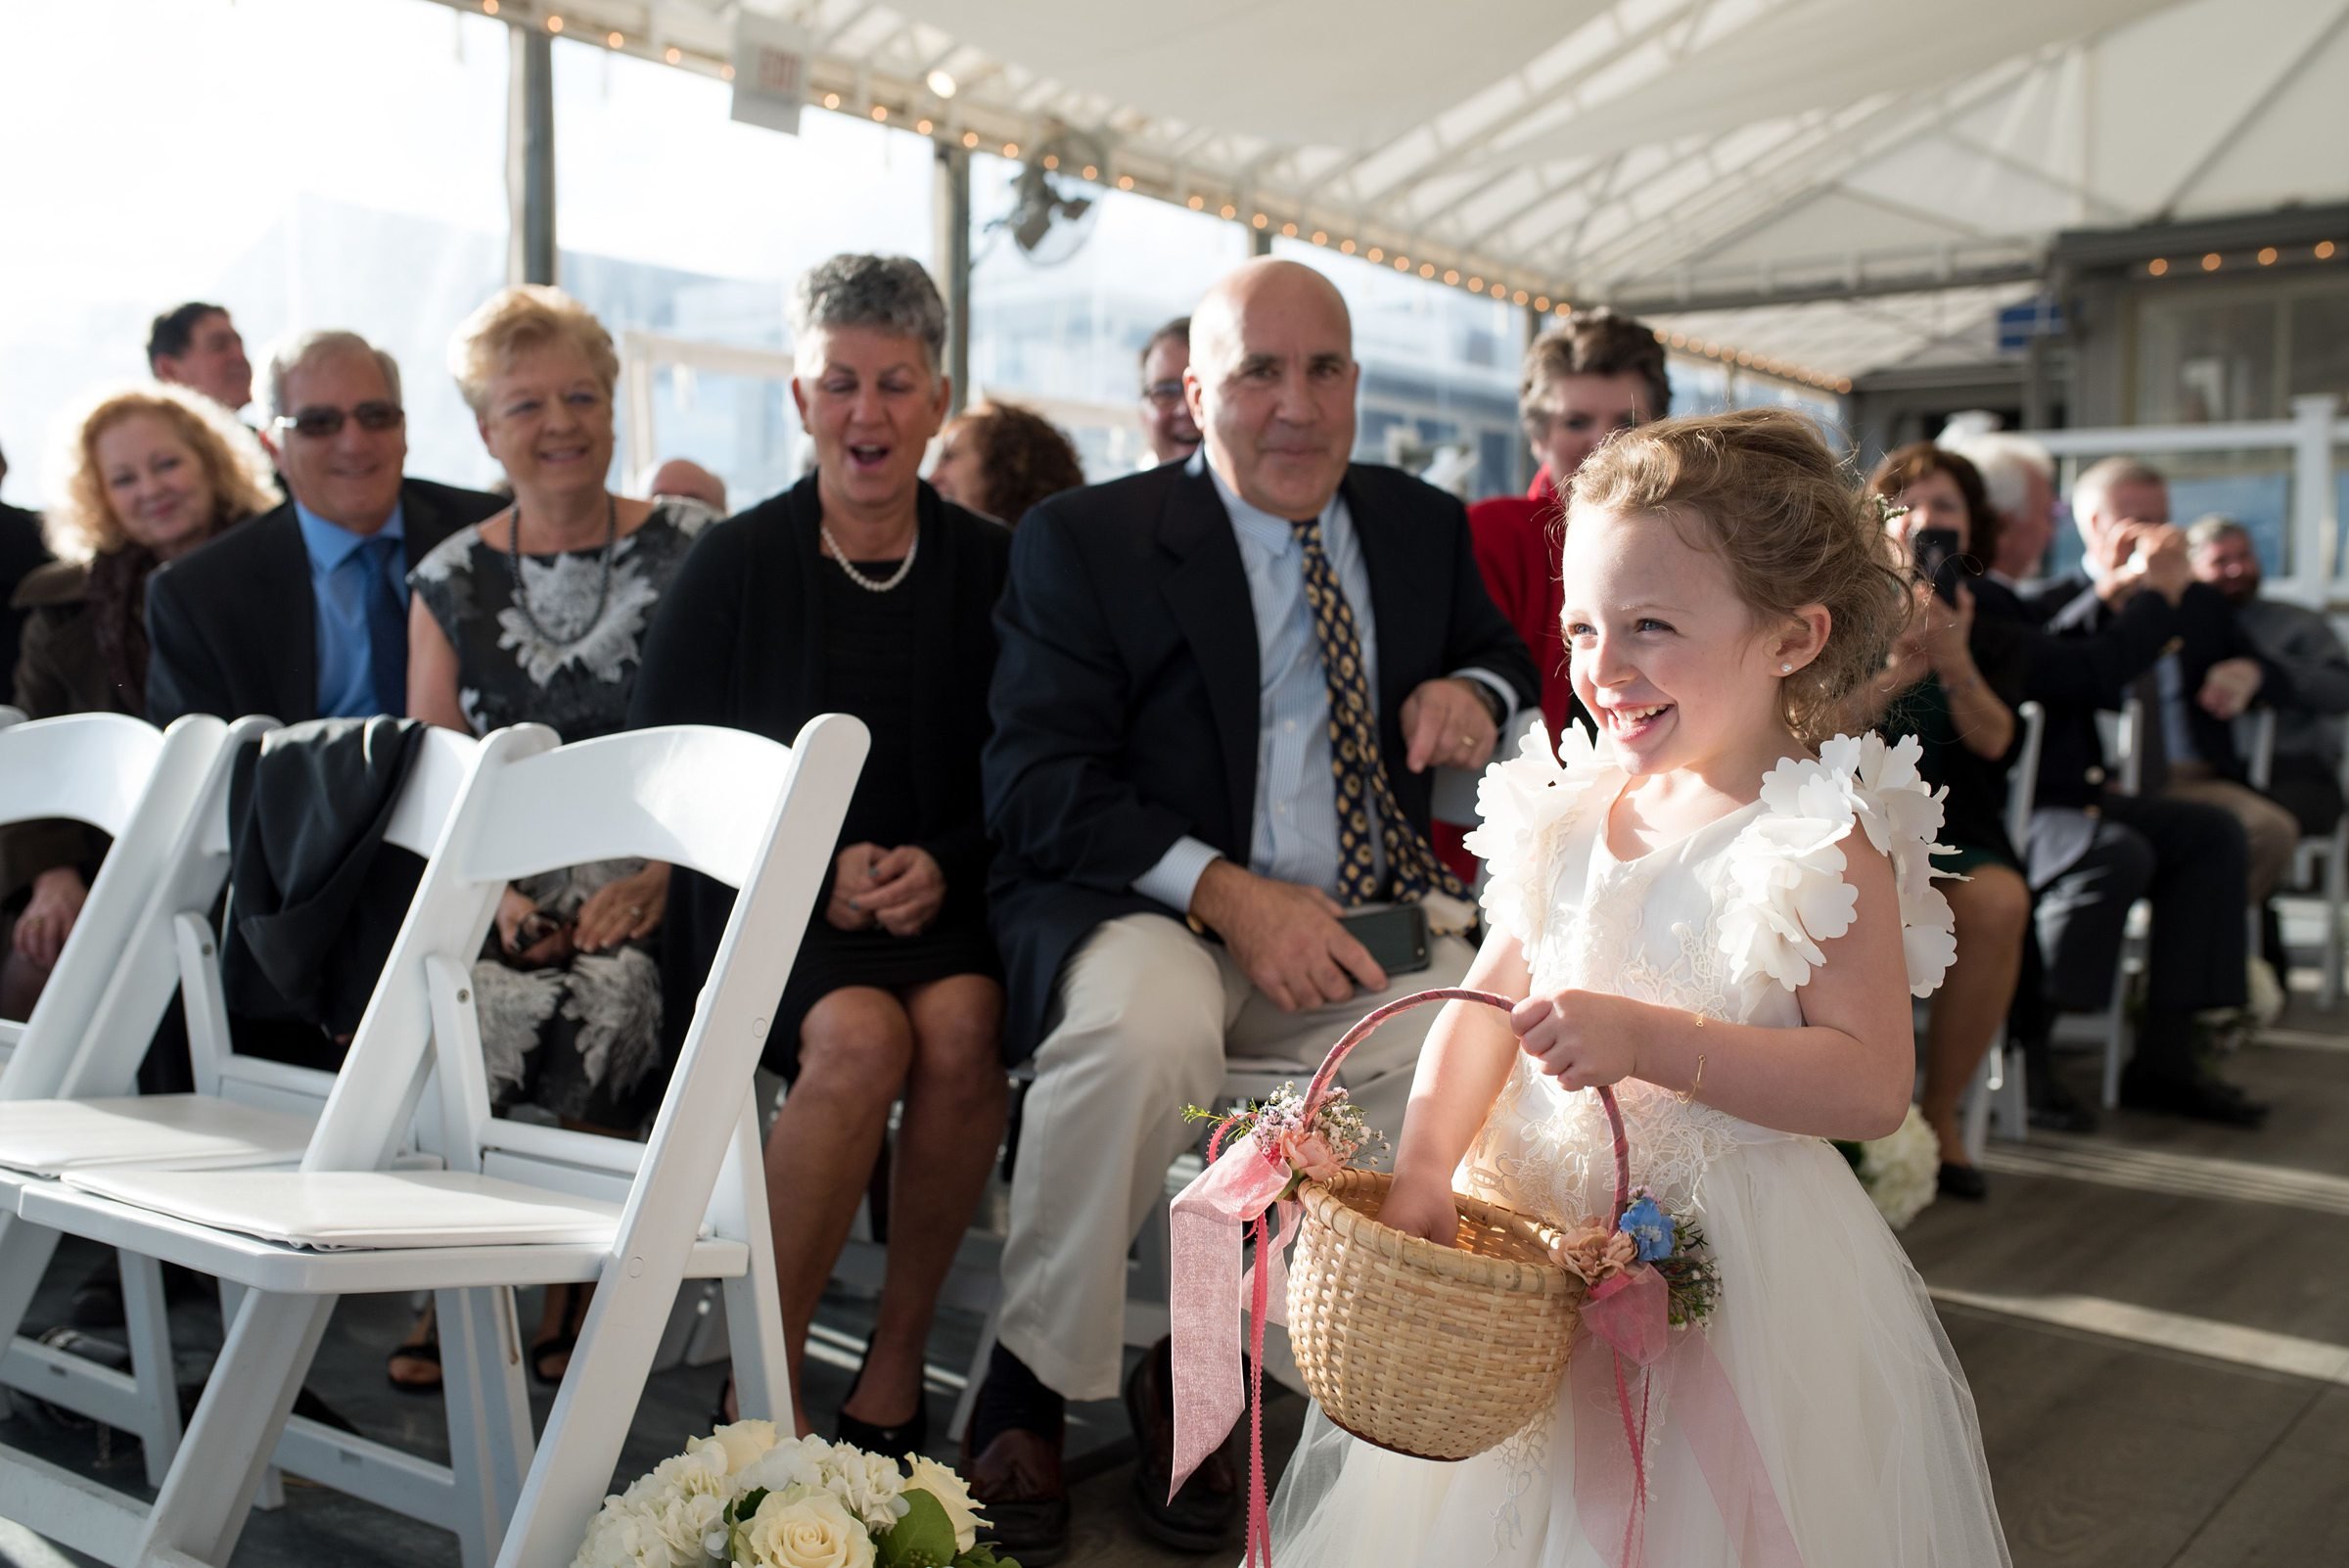 Popponesset Inn Wedding Ceremony with flower girl walking down the aisle